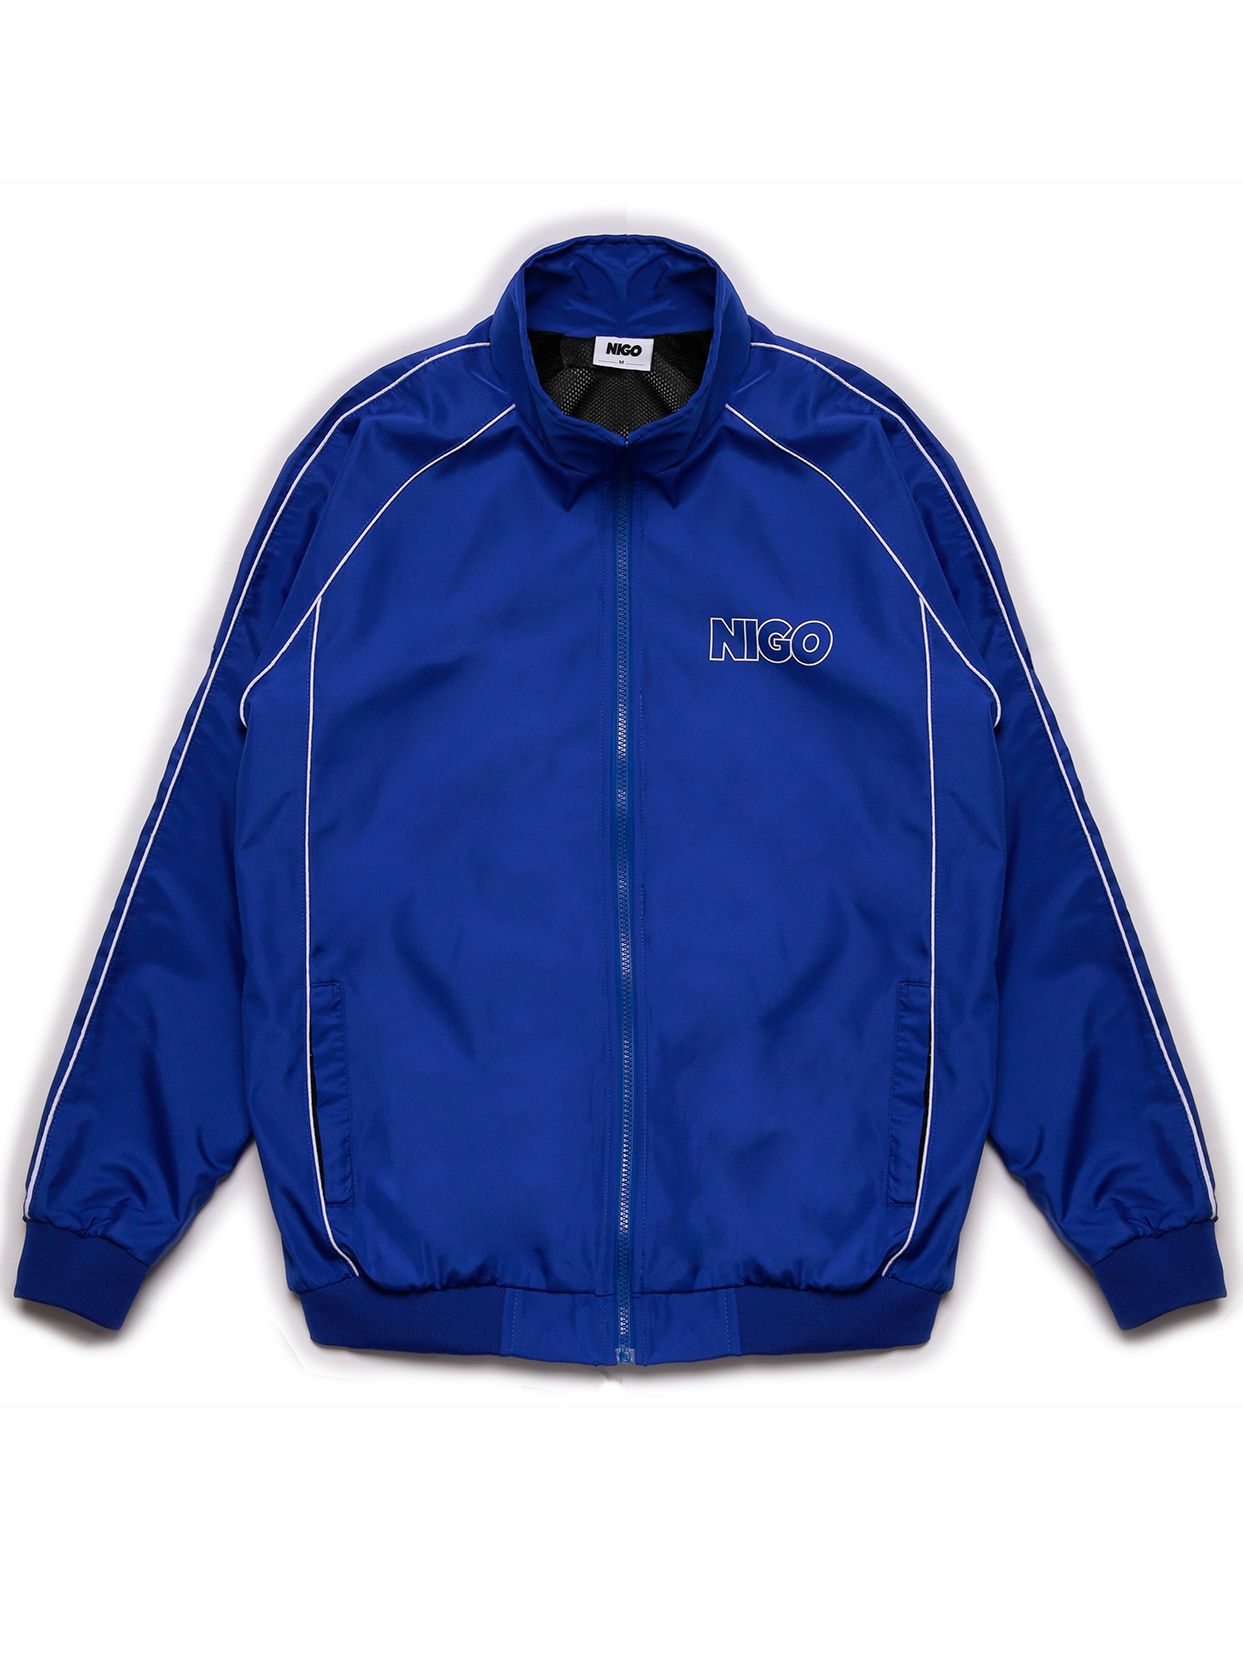  Áo khoác dù Blue trạck jacket 11 